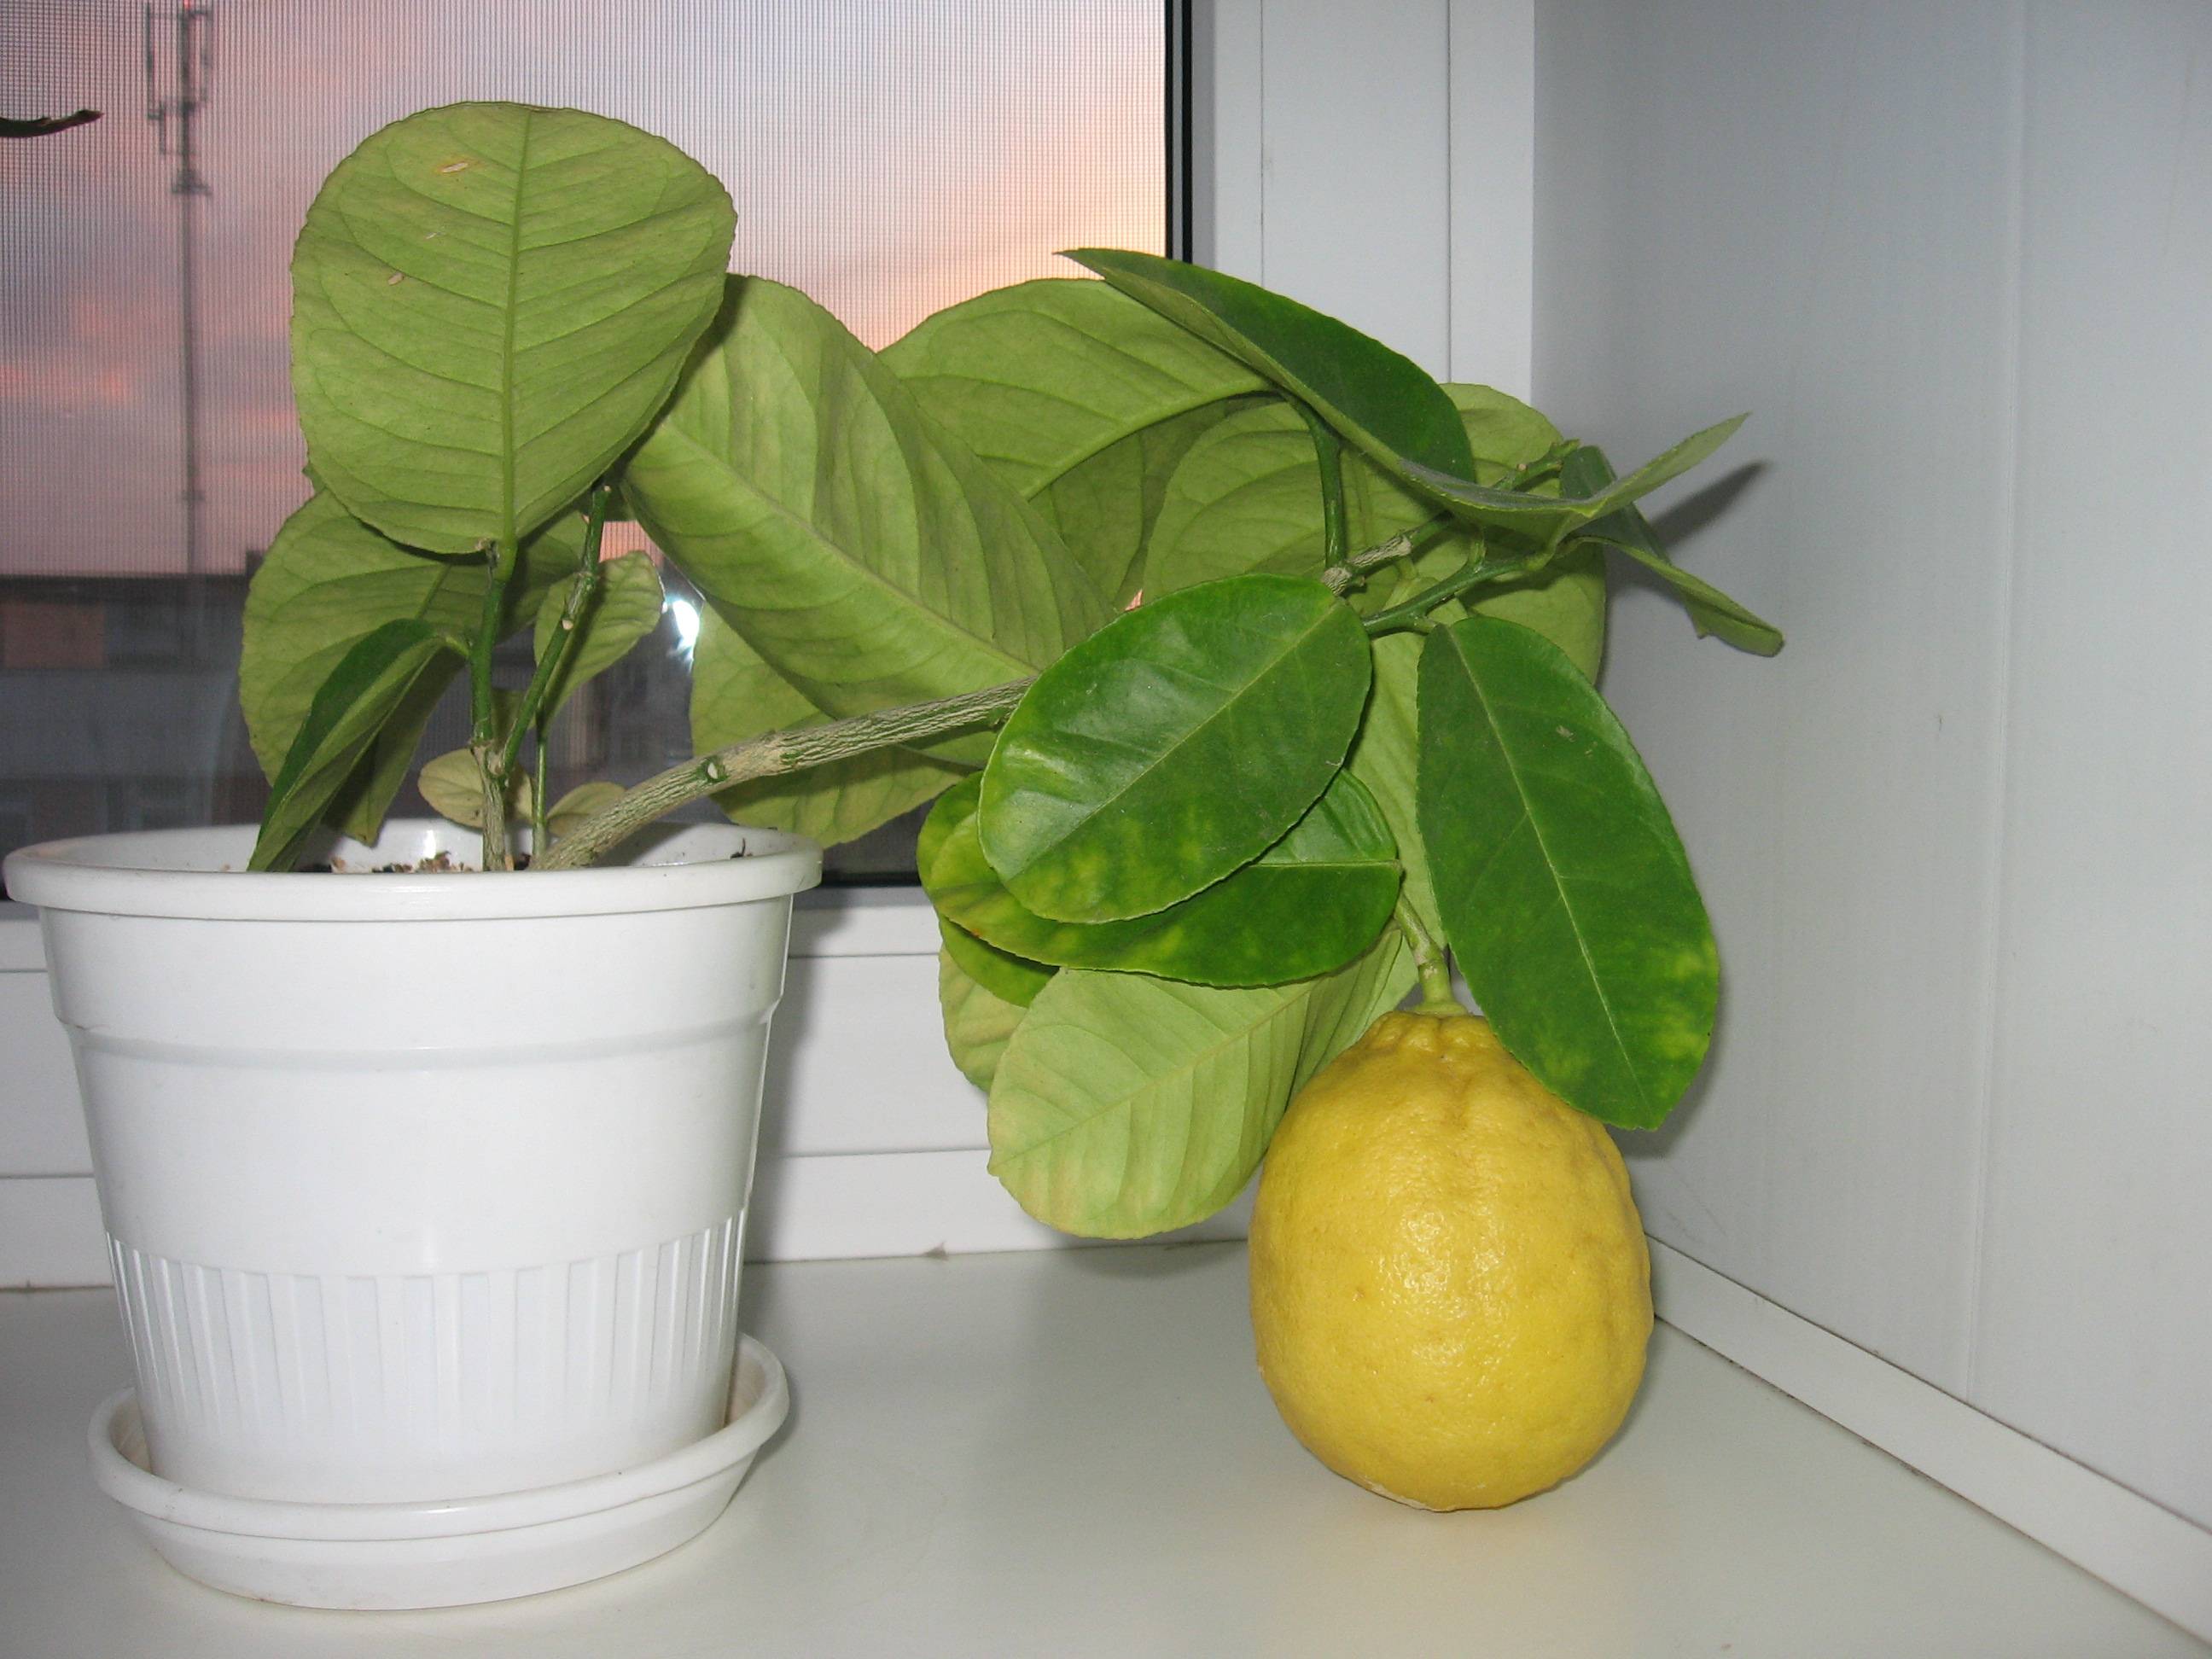 Лимонное дерево – лучшие сорта для комнатного выращивания. принципы ухода за цитрусовыми, прививки, пересадка, размножение